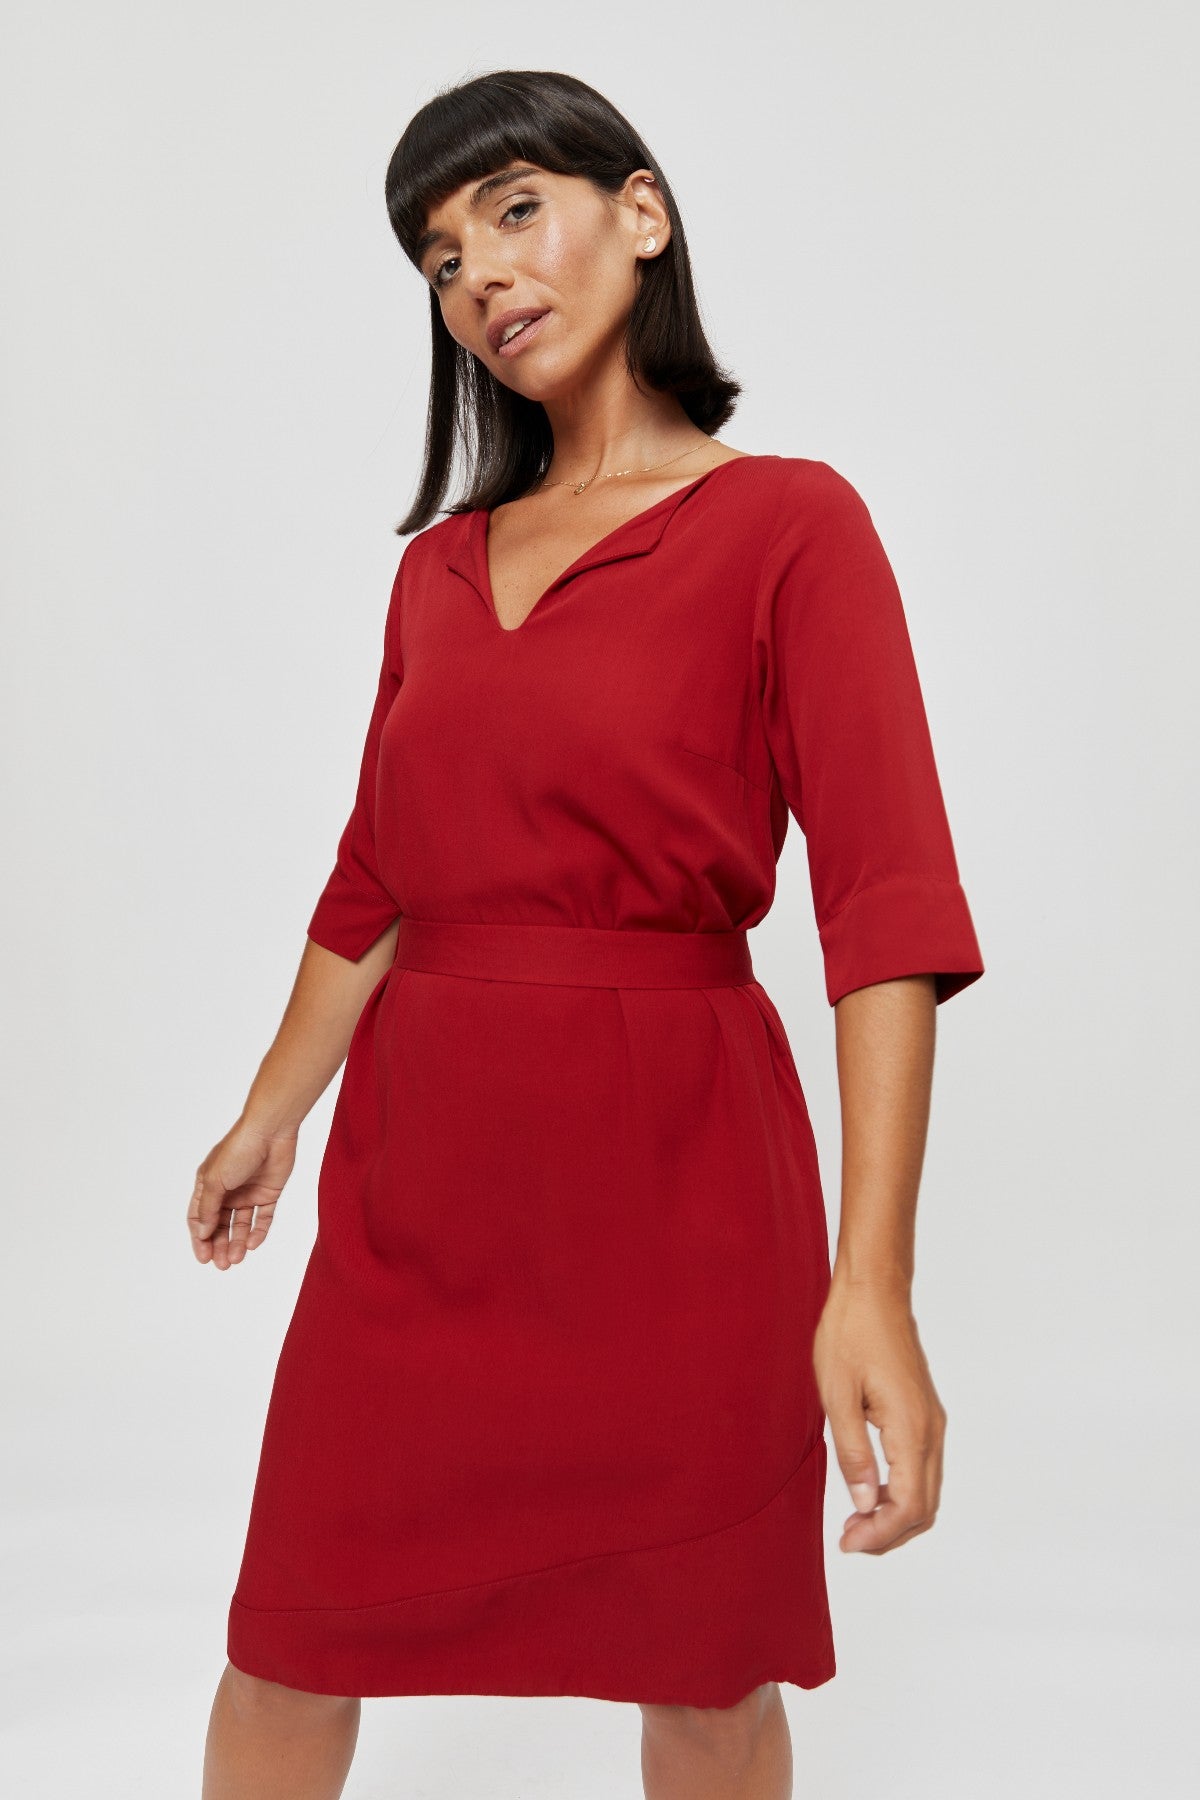 Elegantes Rot Kleid mit V Ausschnitt - AYANI